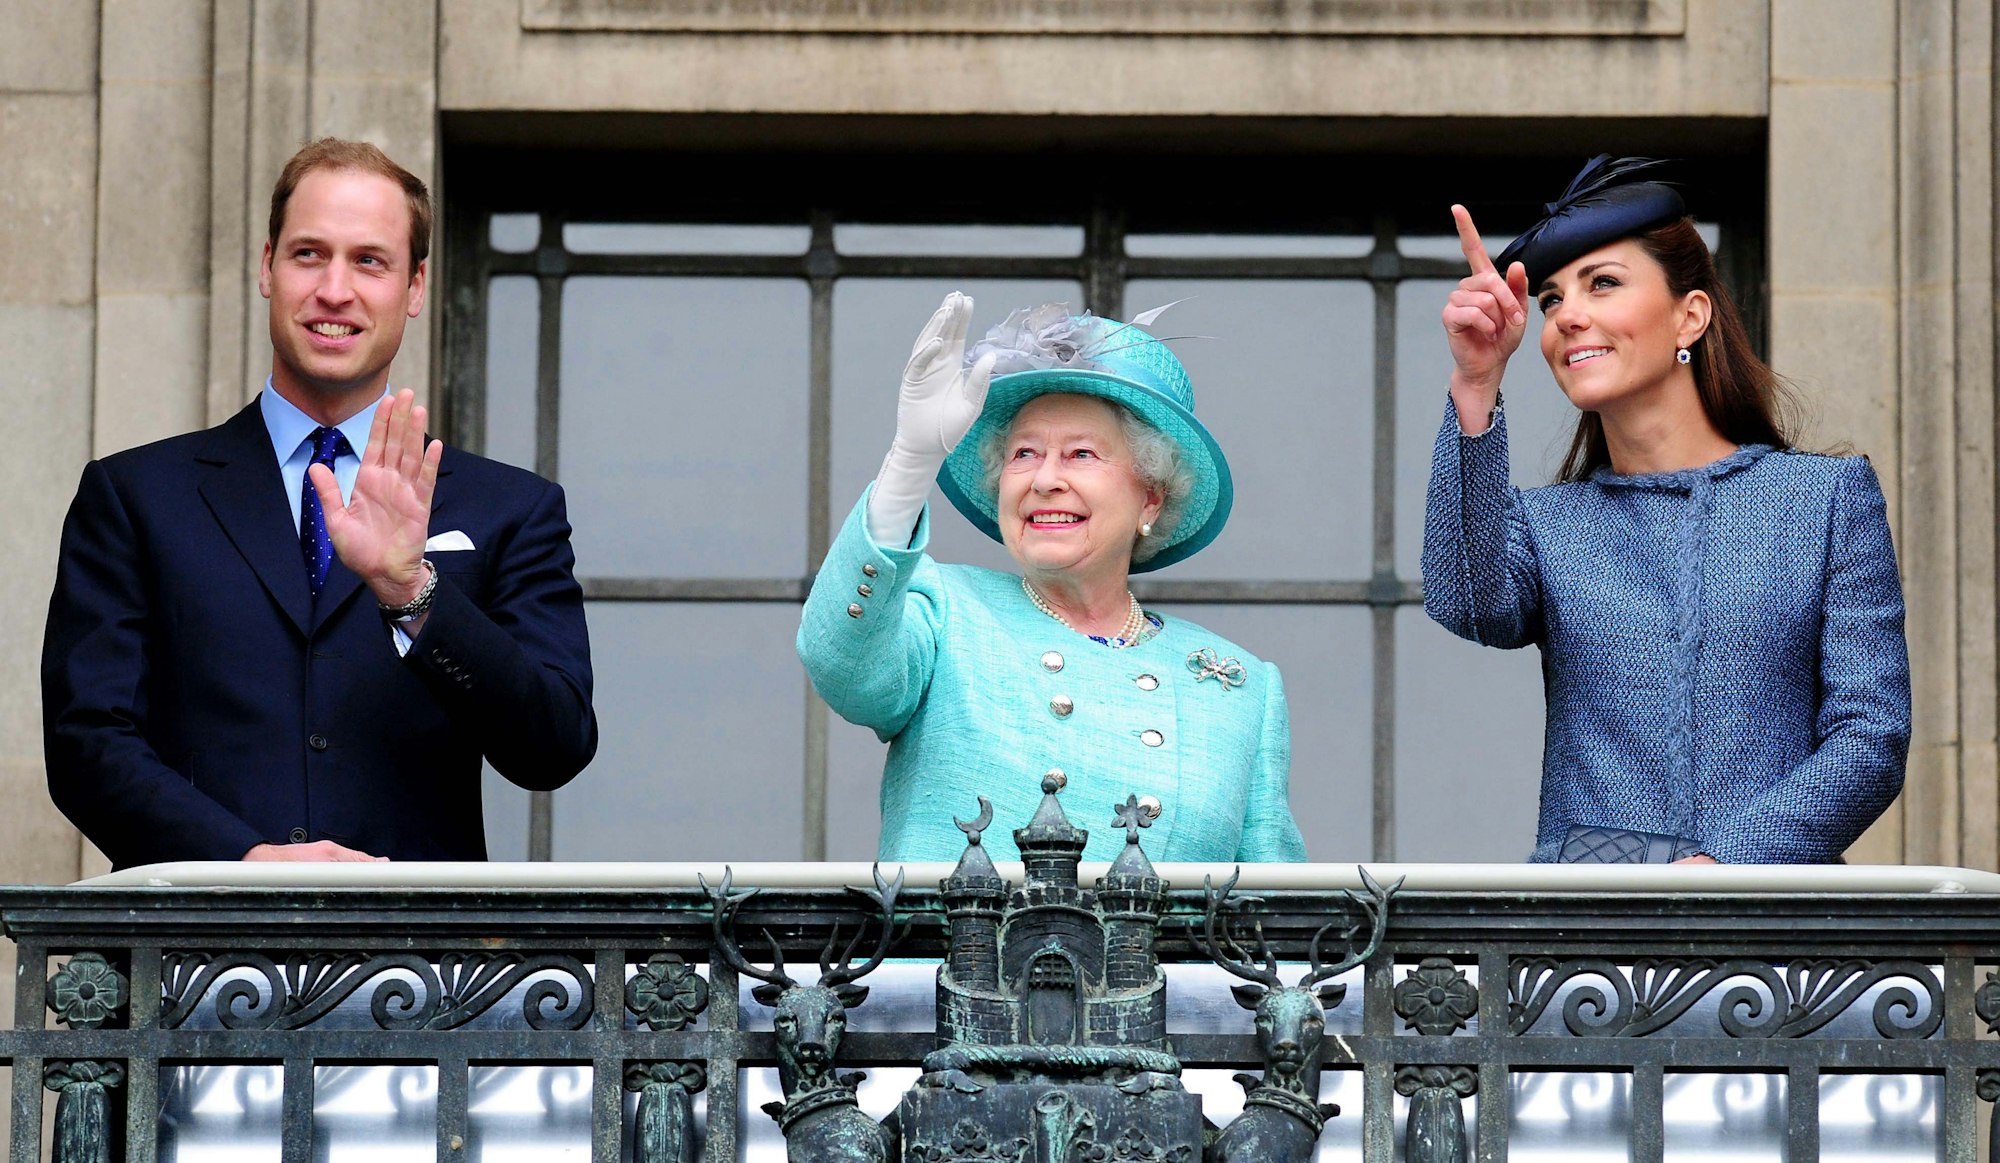 Prinz William, damals noch Herzog von Cambridge, und seiner Frau Kate, damals Herzogin von Cambridge, am 13. Juni 2012 auf dem Balkon des Council House Prince während der Feierlichkeiten zum diamantenen Thronjubiläum, mit dem Königin Elizabteh II.  ihr 60-jähriges Regierungsjubiläum feierte.